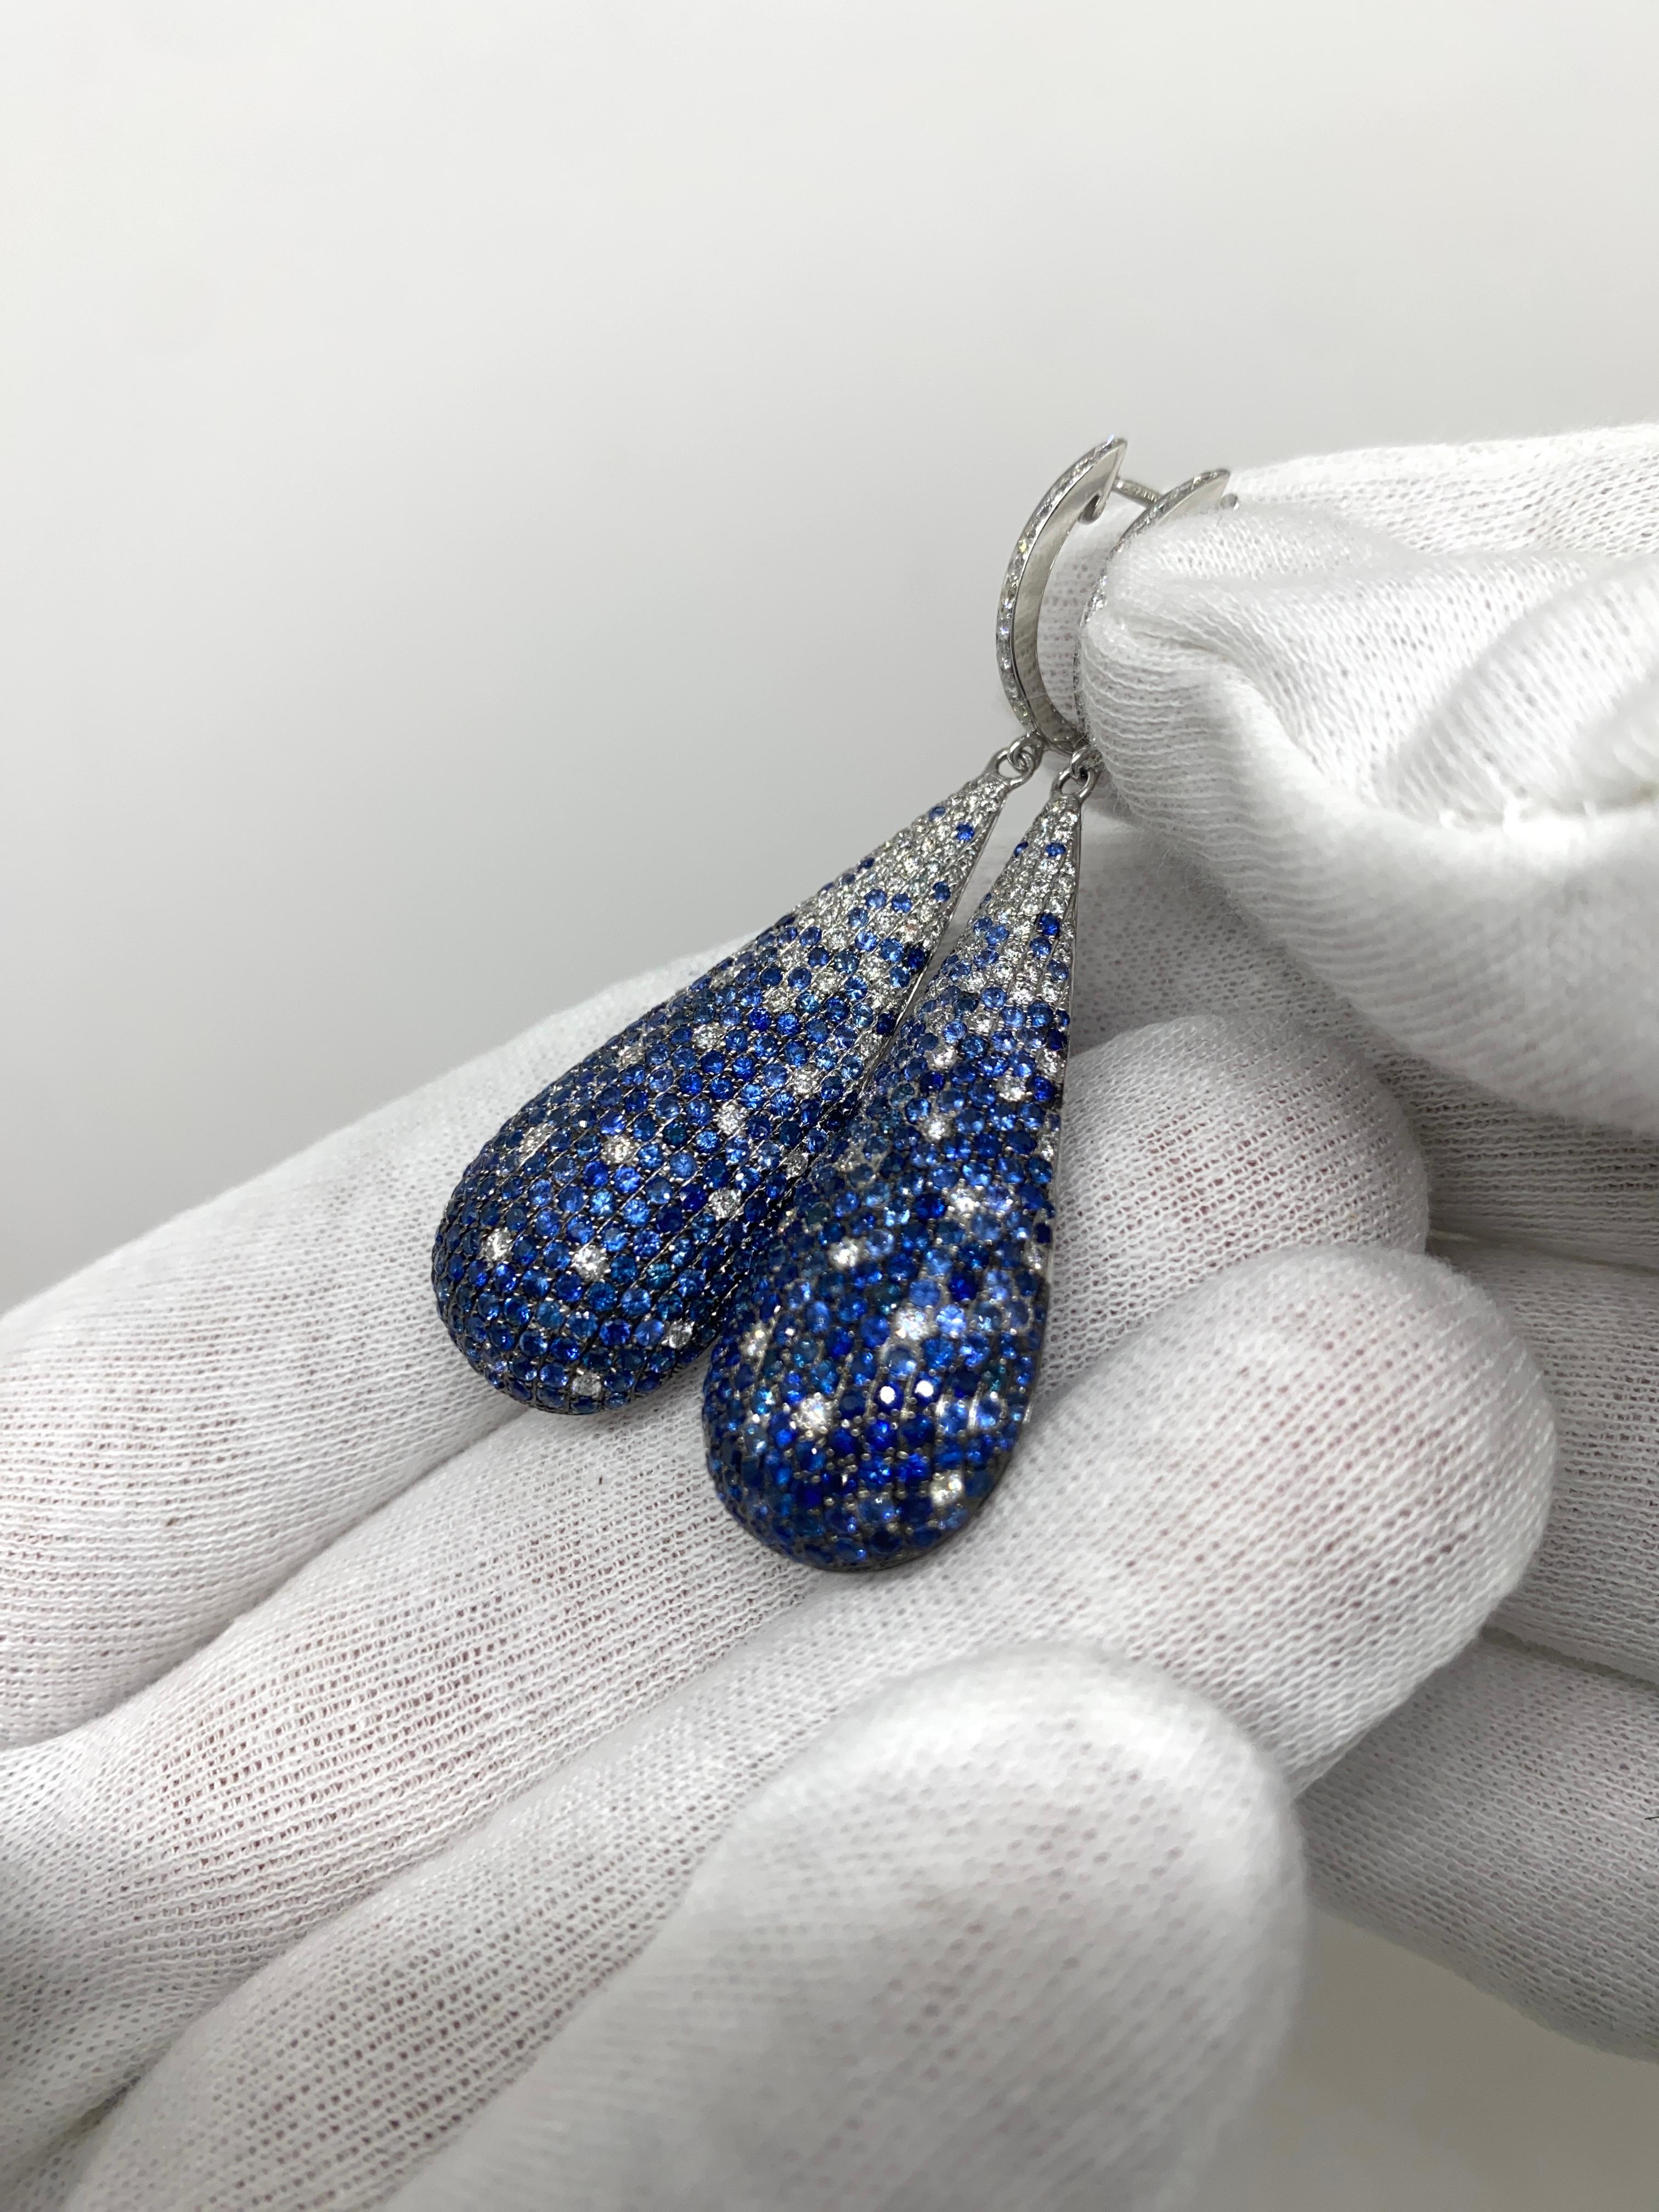 Boucles d'oreilles pendantes en or blanc 18kt avec saphirs bleus taille brillant pour ct.5.62 et diamants blancs taille brillant pour ct.1.42

Bienvenue dans notre collection de bijoux, où chaque pièce raconte une histoire d'élégance intemporelle et